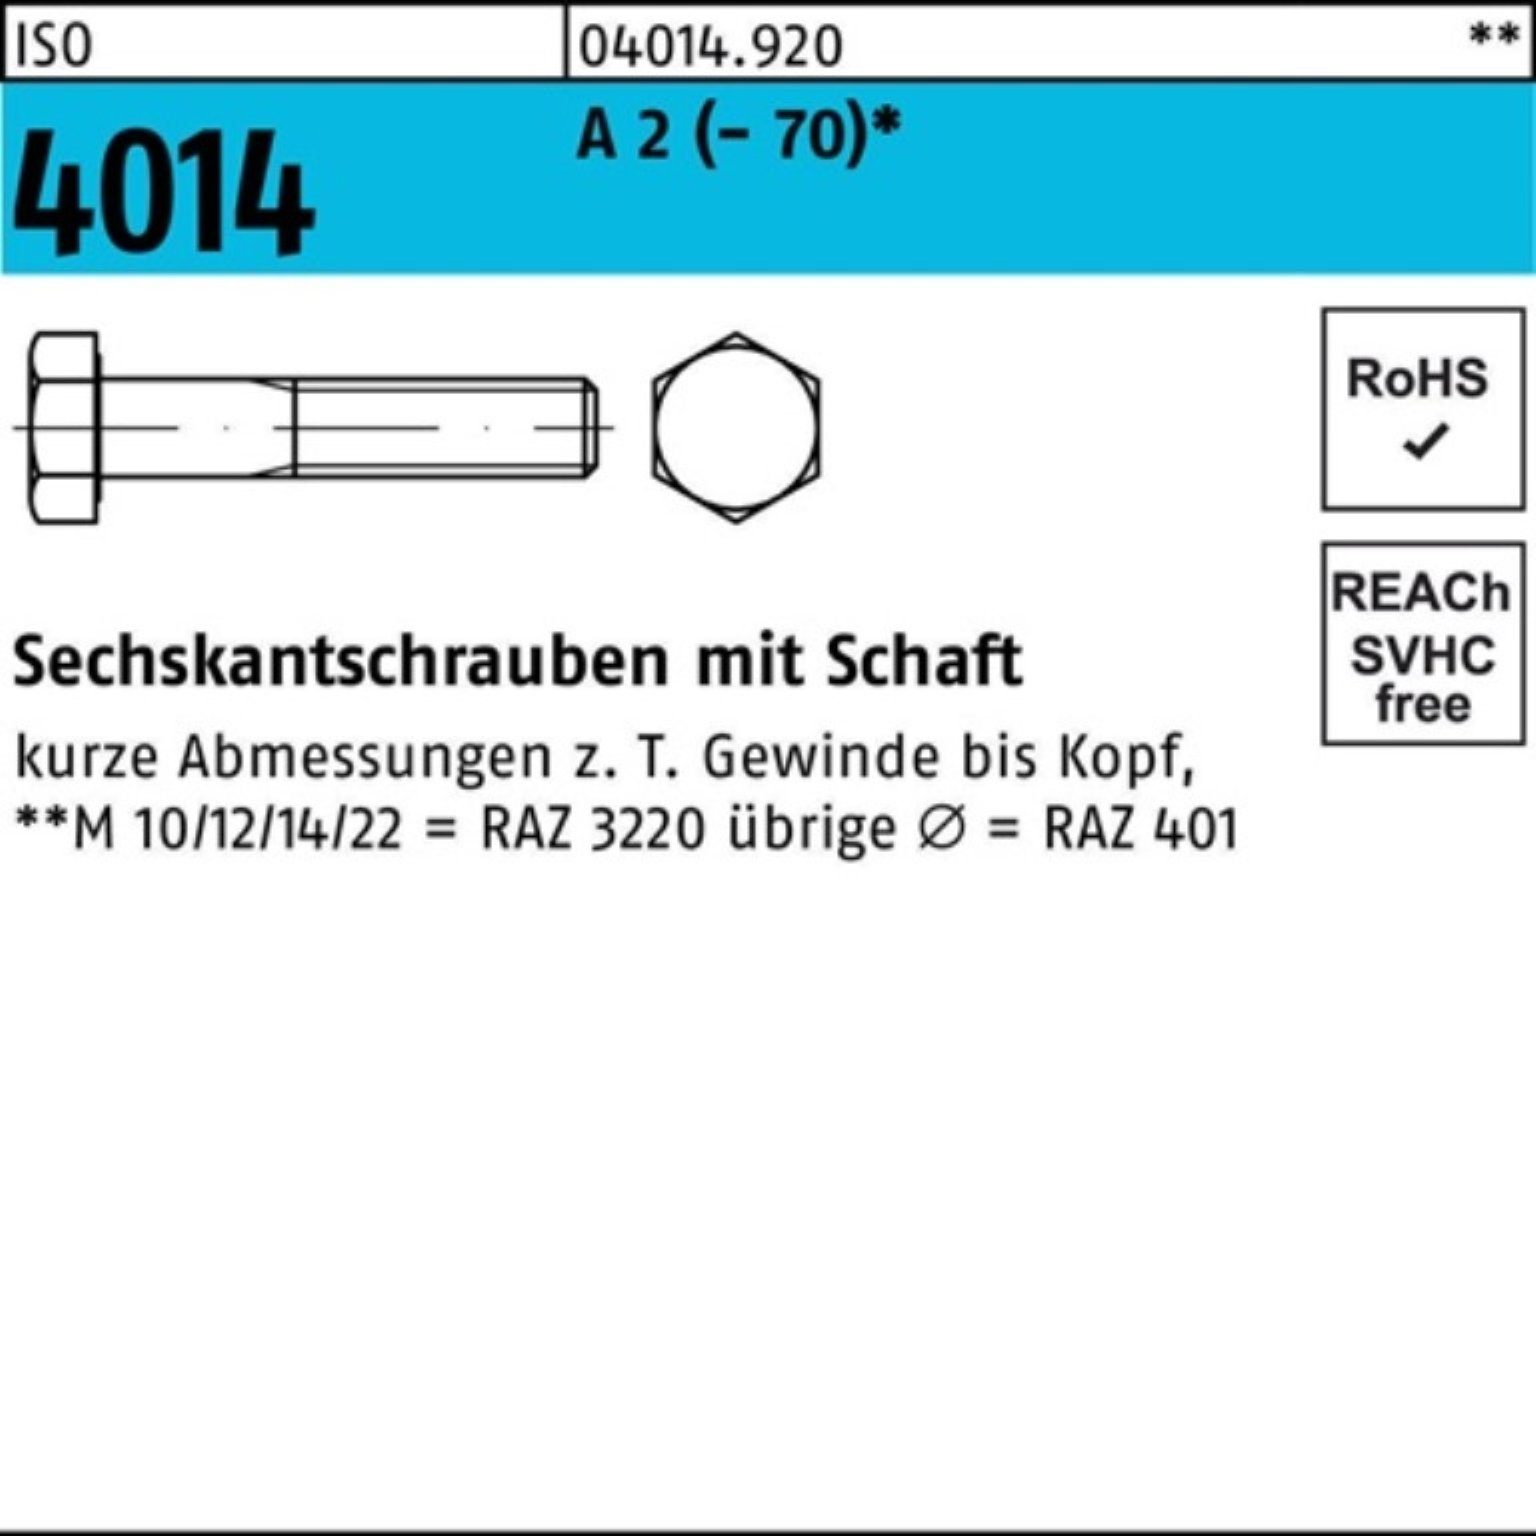 Bufab Sechskantschraube Sechskantschraube 1 (70) 4014 150 2 ISO Pack M16x Schaft St 100er A